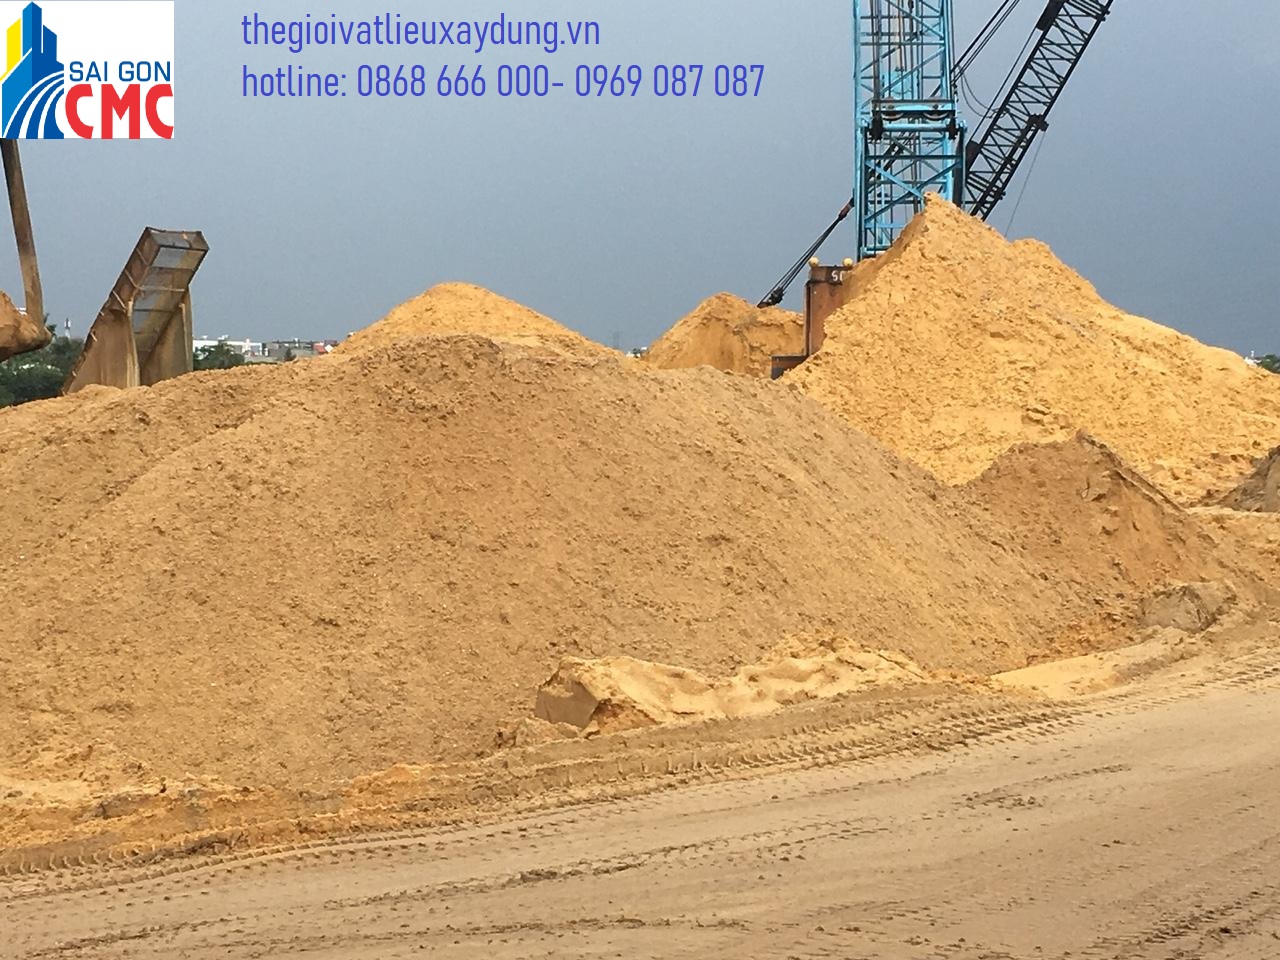 CÔNG TY TNHH TM-DV Sài Gòn CMC chúng tôi cung cấp vật liệu cát xây dựng